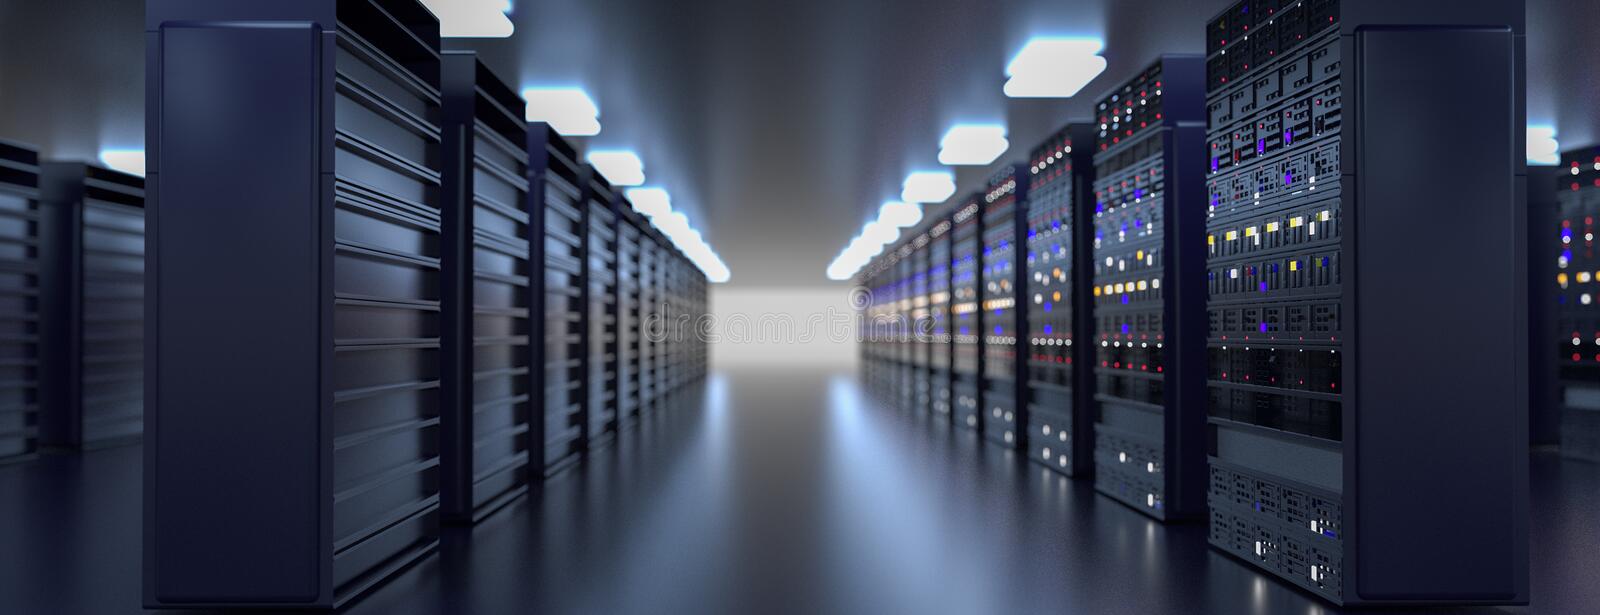 сервер-центр-обработки-данных-комнаты-серверов-резервное-копирование-219358968.jpg